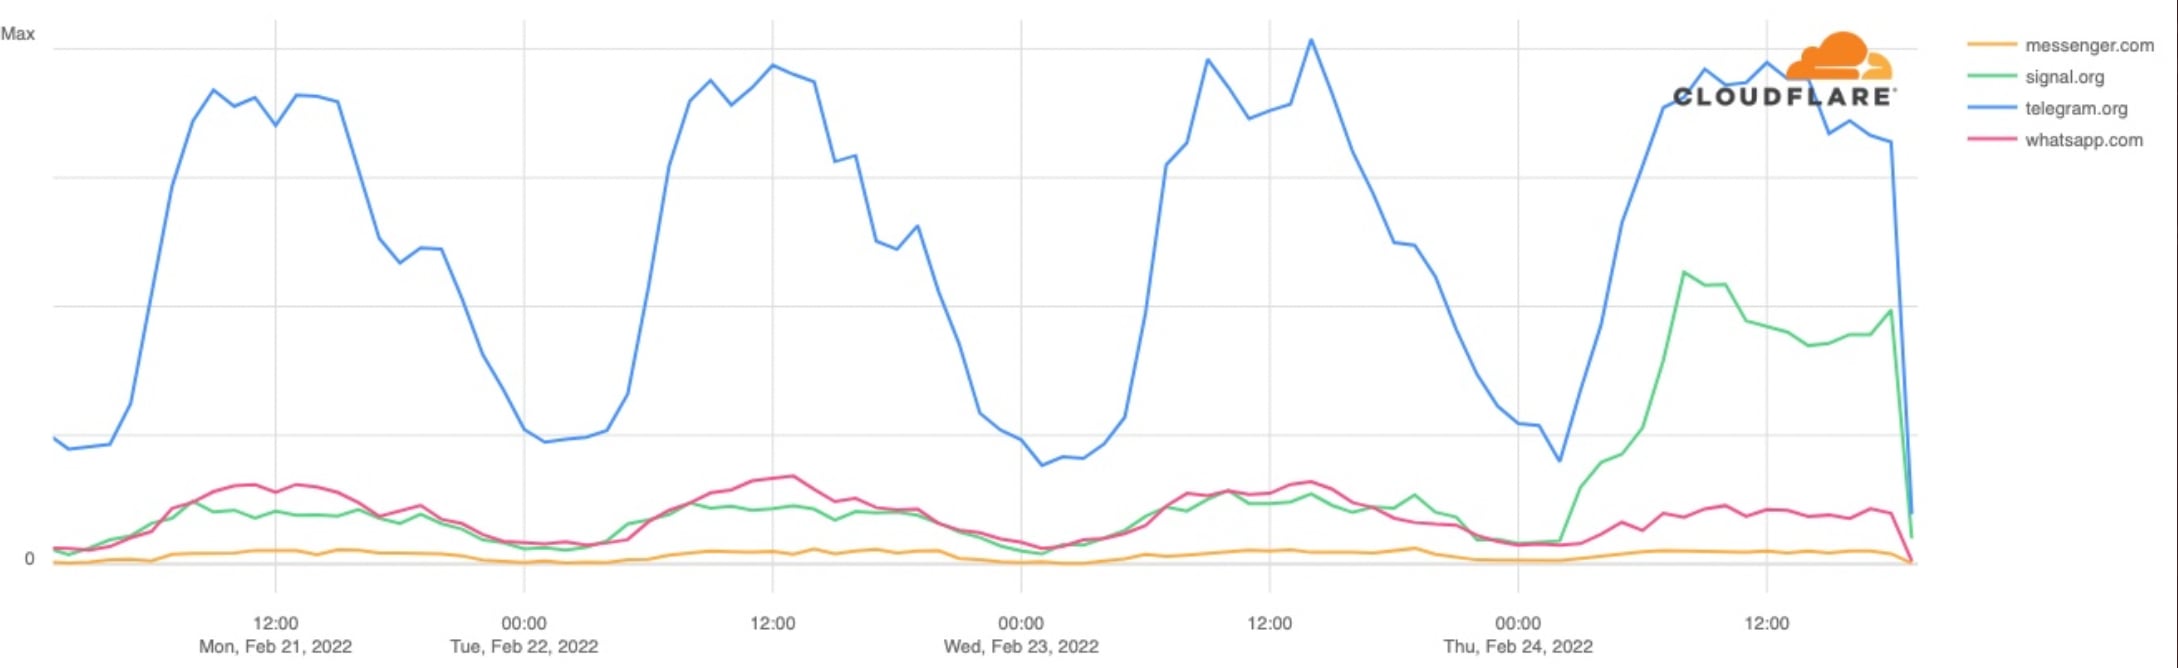 Aumento en el uso de Signal (aplicación de mensajería) en Ucrania en las últimas 24 horas. Aumento más pequeño pero significativo en el uso de Telegram también - menciona Matthew Prince (foto: Twitter)